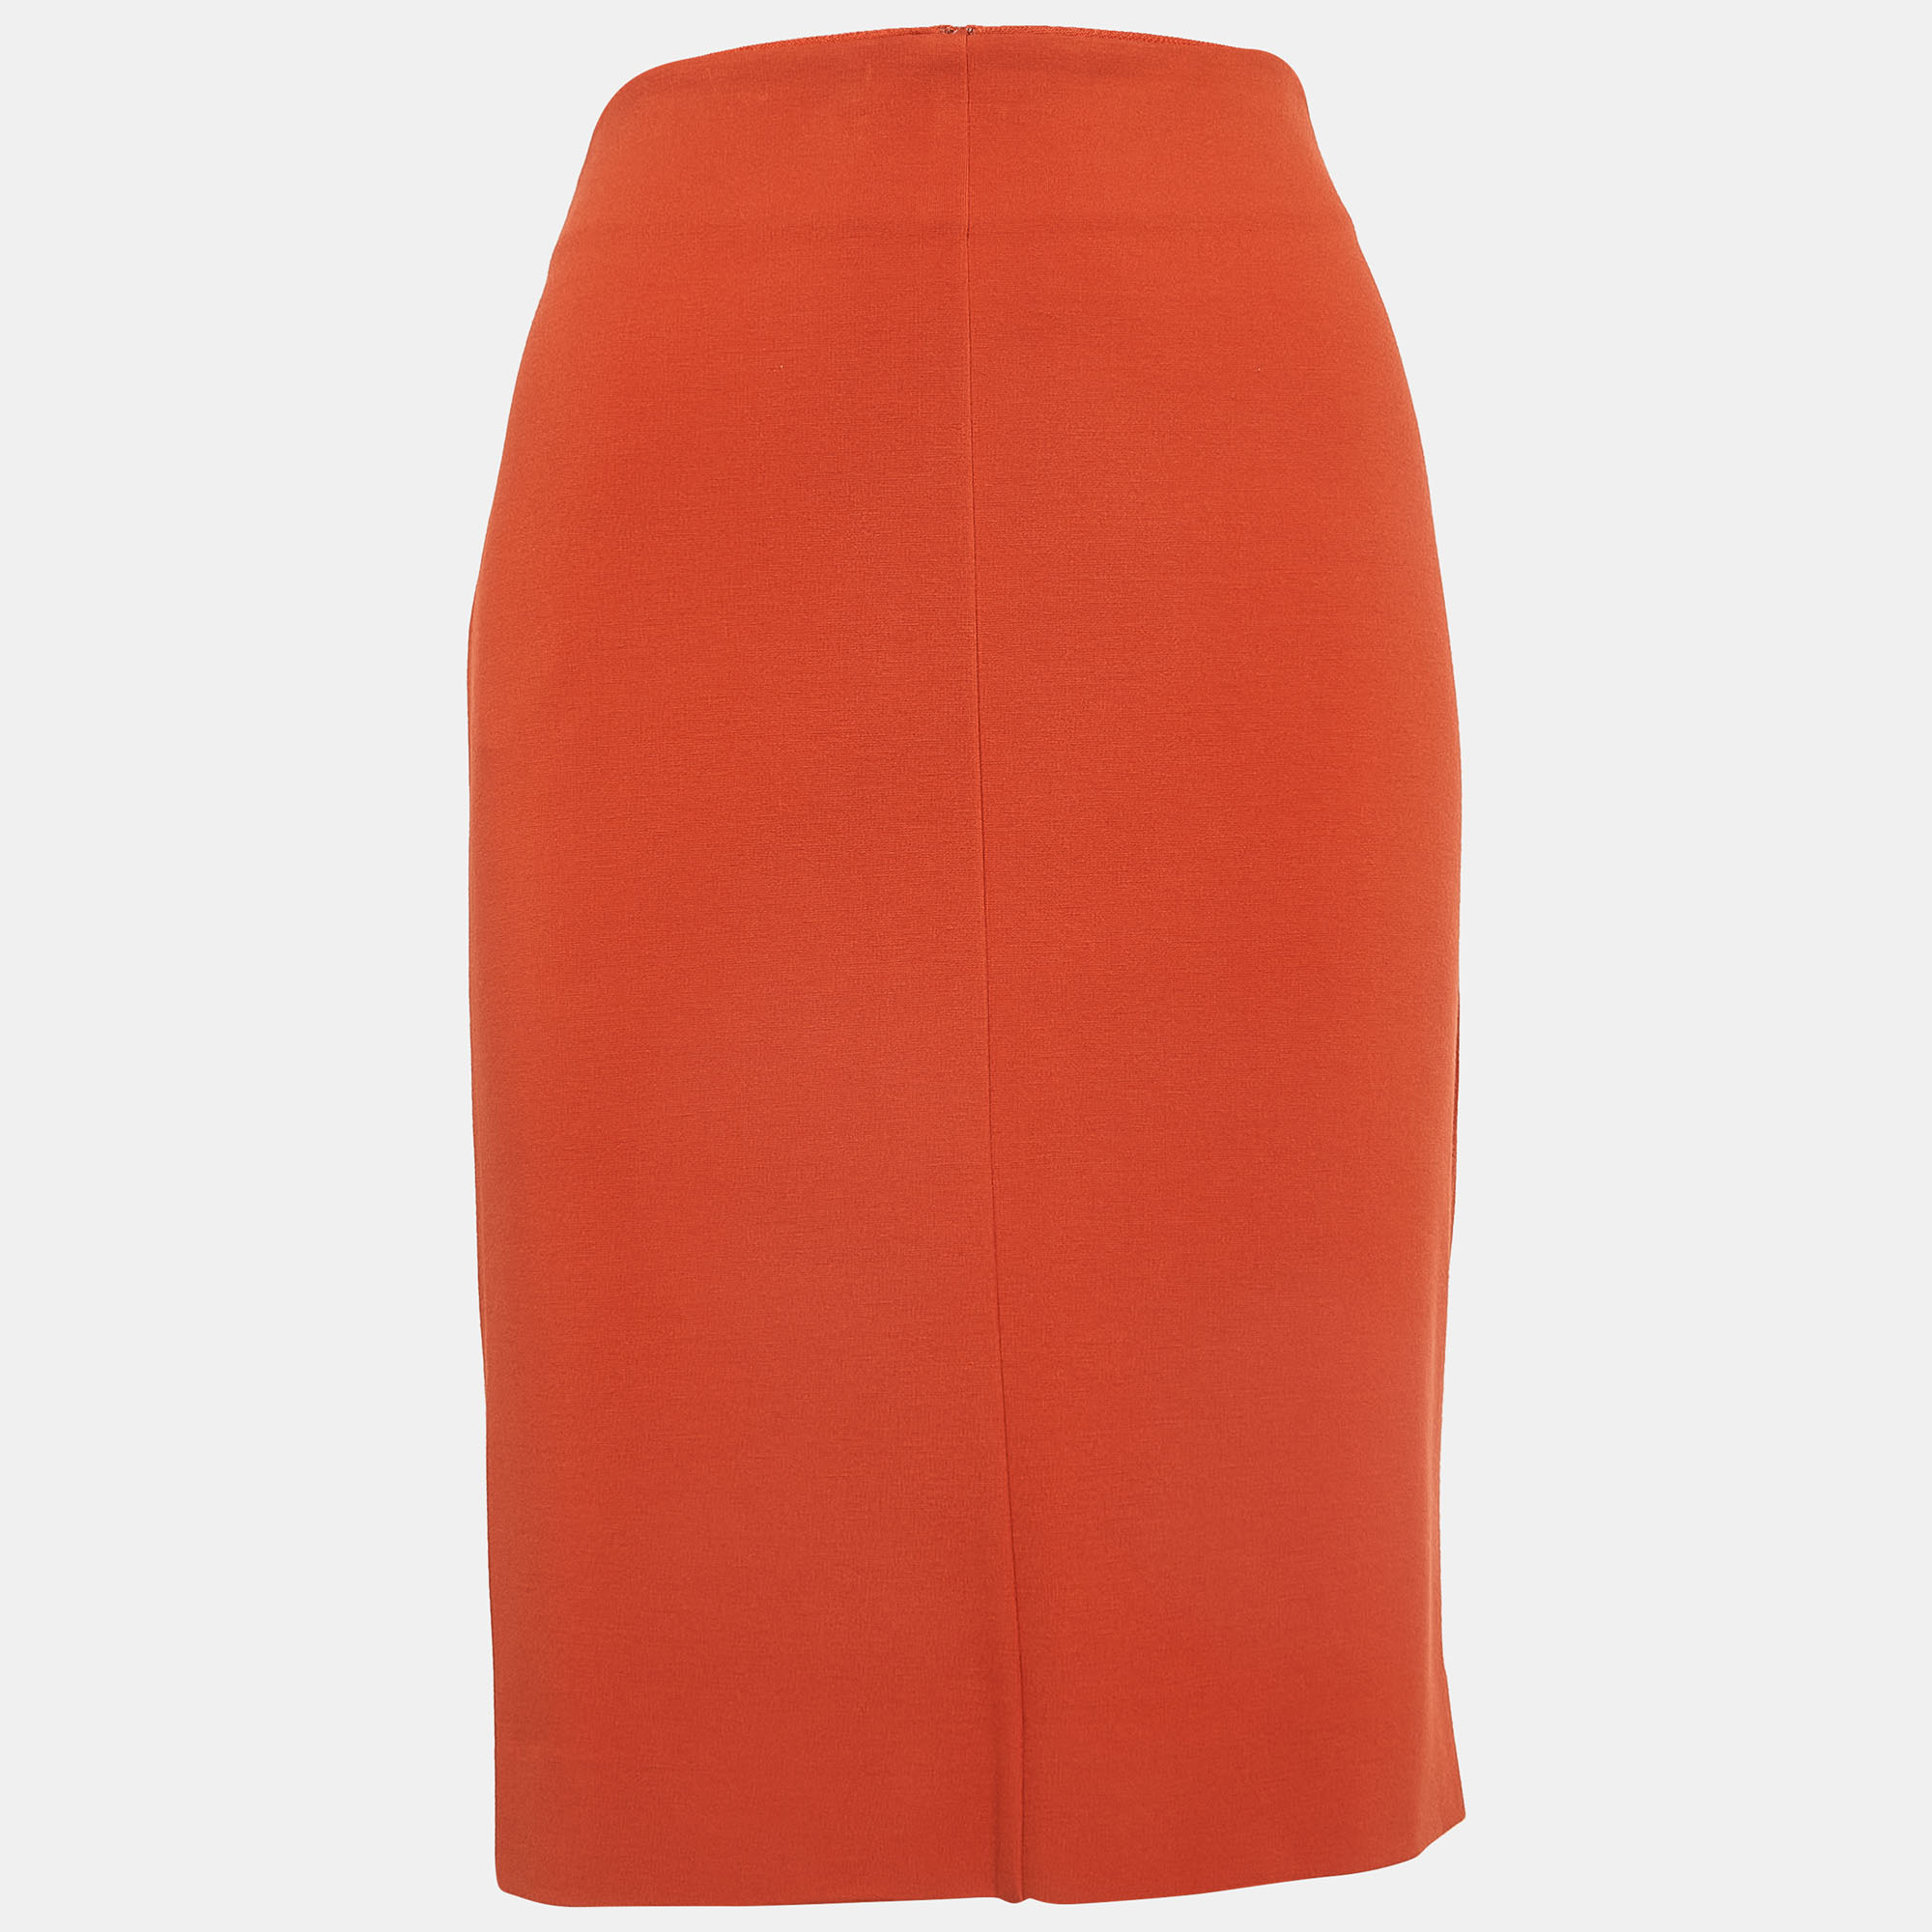 Diane von furstenberg orange knit esme pencil skirt m